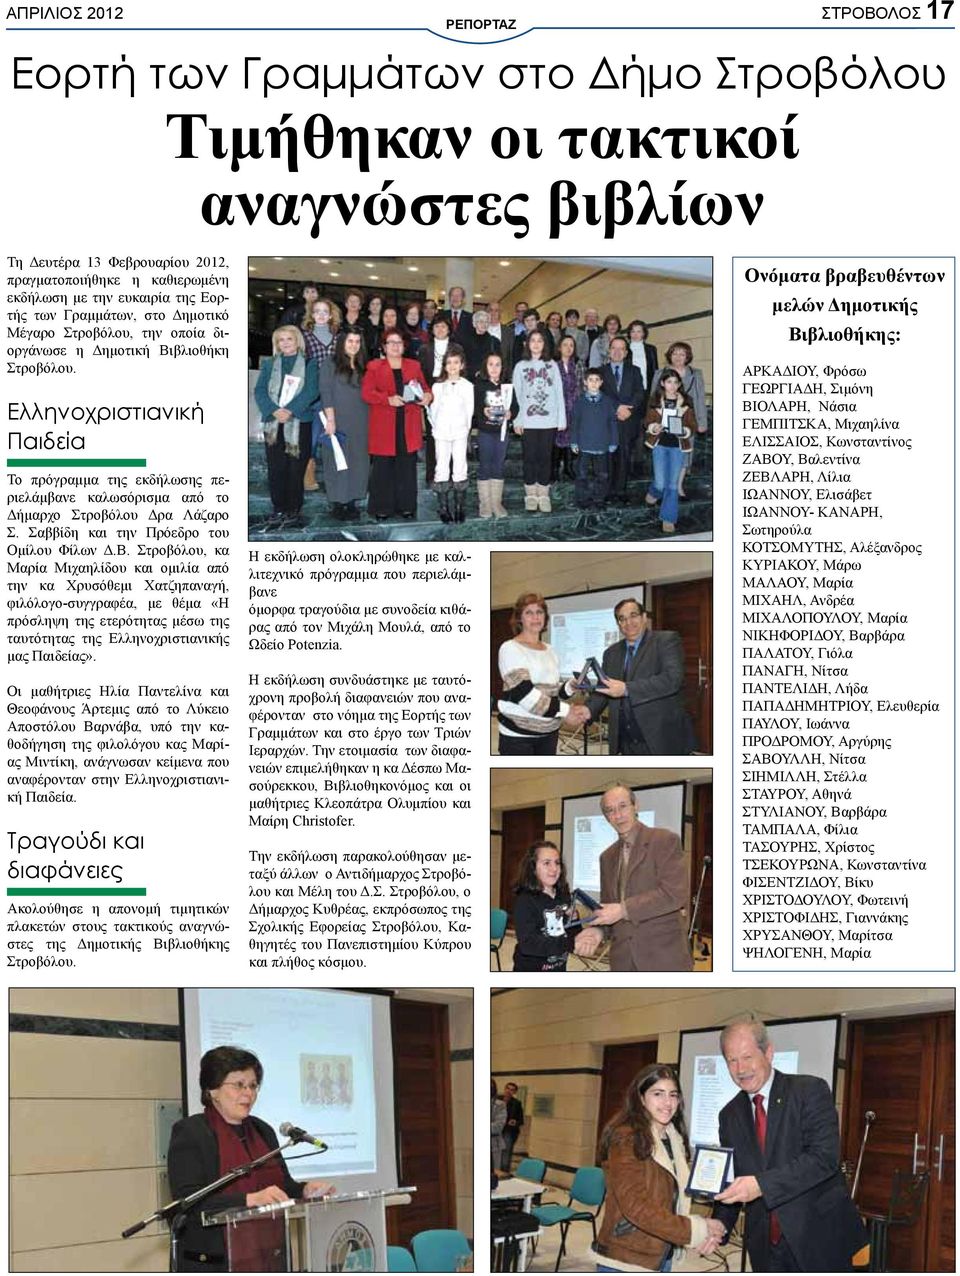 Ελληνοχριστιανική Παιδεία Το πρόγραμμα της εκδήλωσης περιελάμβανε καλωσόρισμα από το Δήμαρχο Στροβόλου Δρα Λάζαρο Σ. Σαββίδη και την Πρόεδρο του Ομίλου Φίλων Δ.Β.